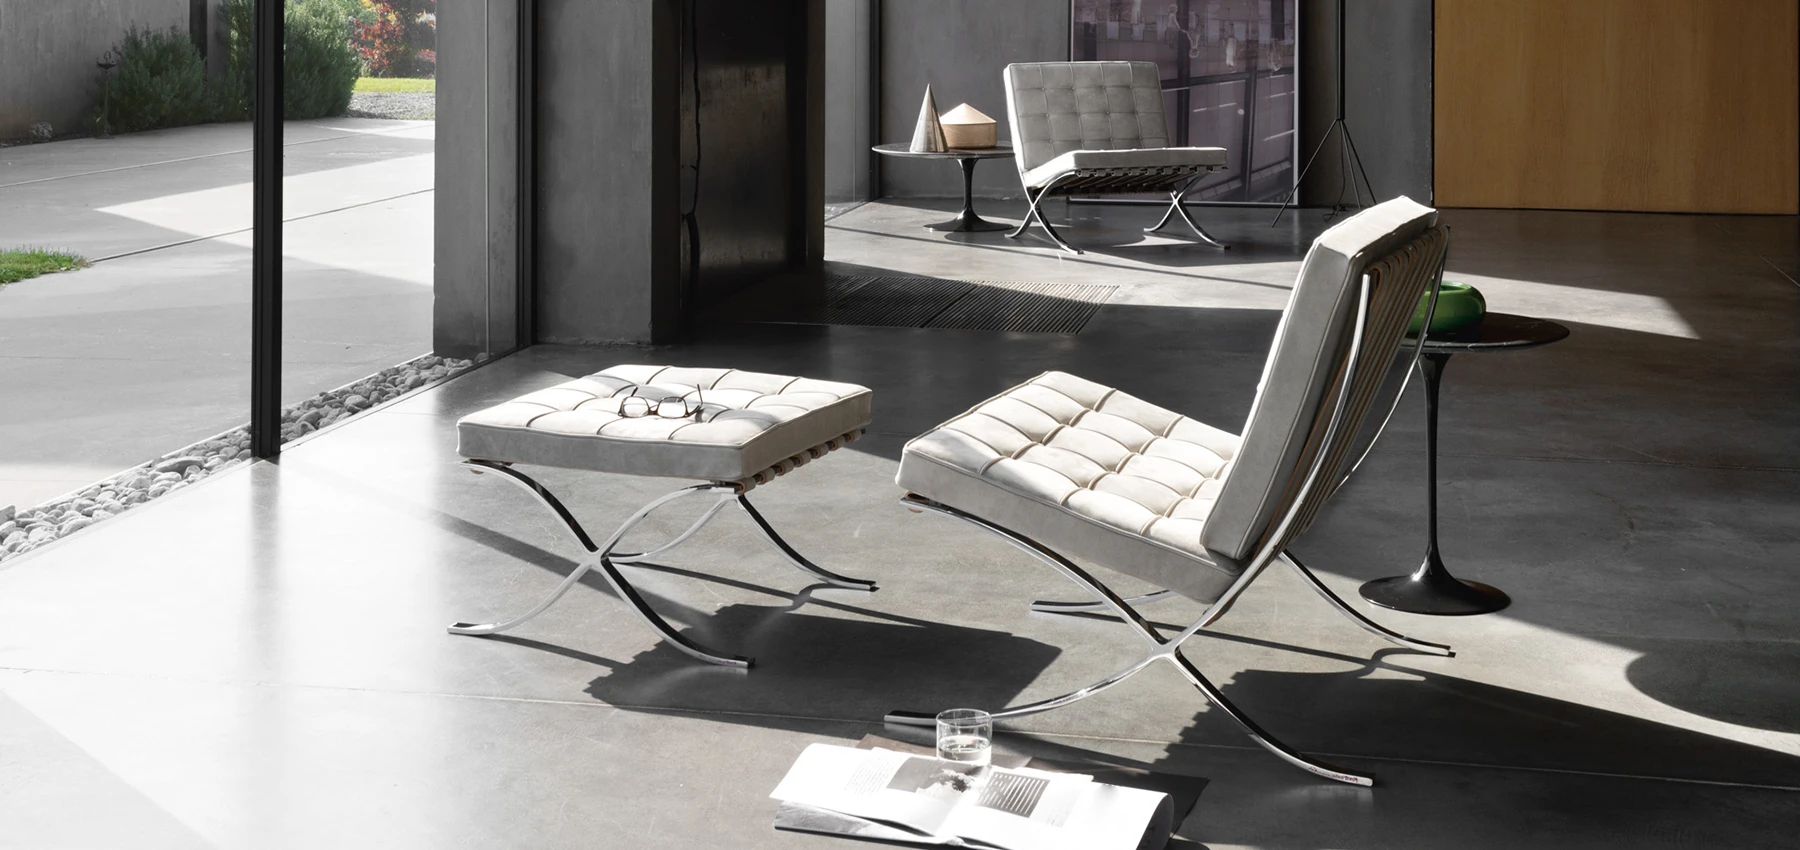 QoQoon Vol.13 Design : Furniture As Art